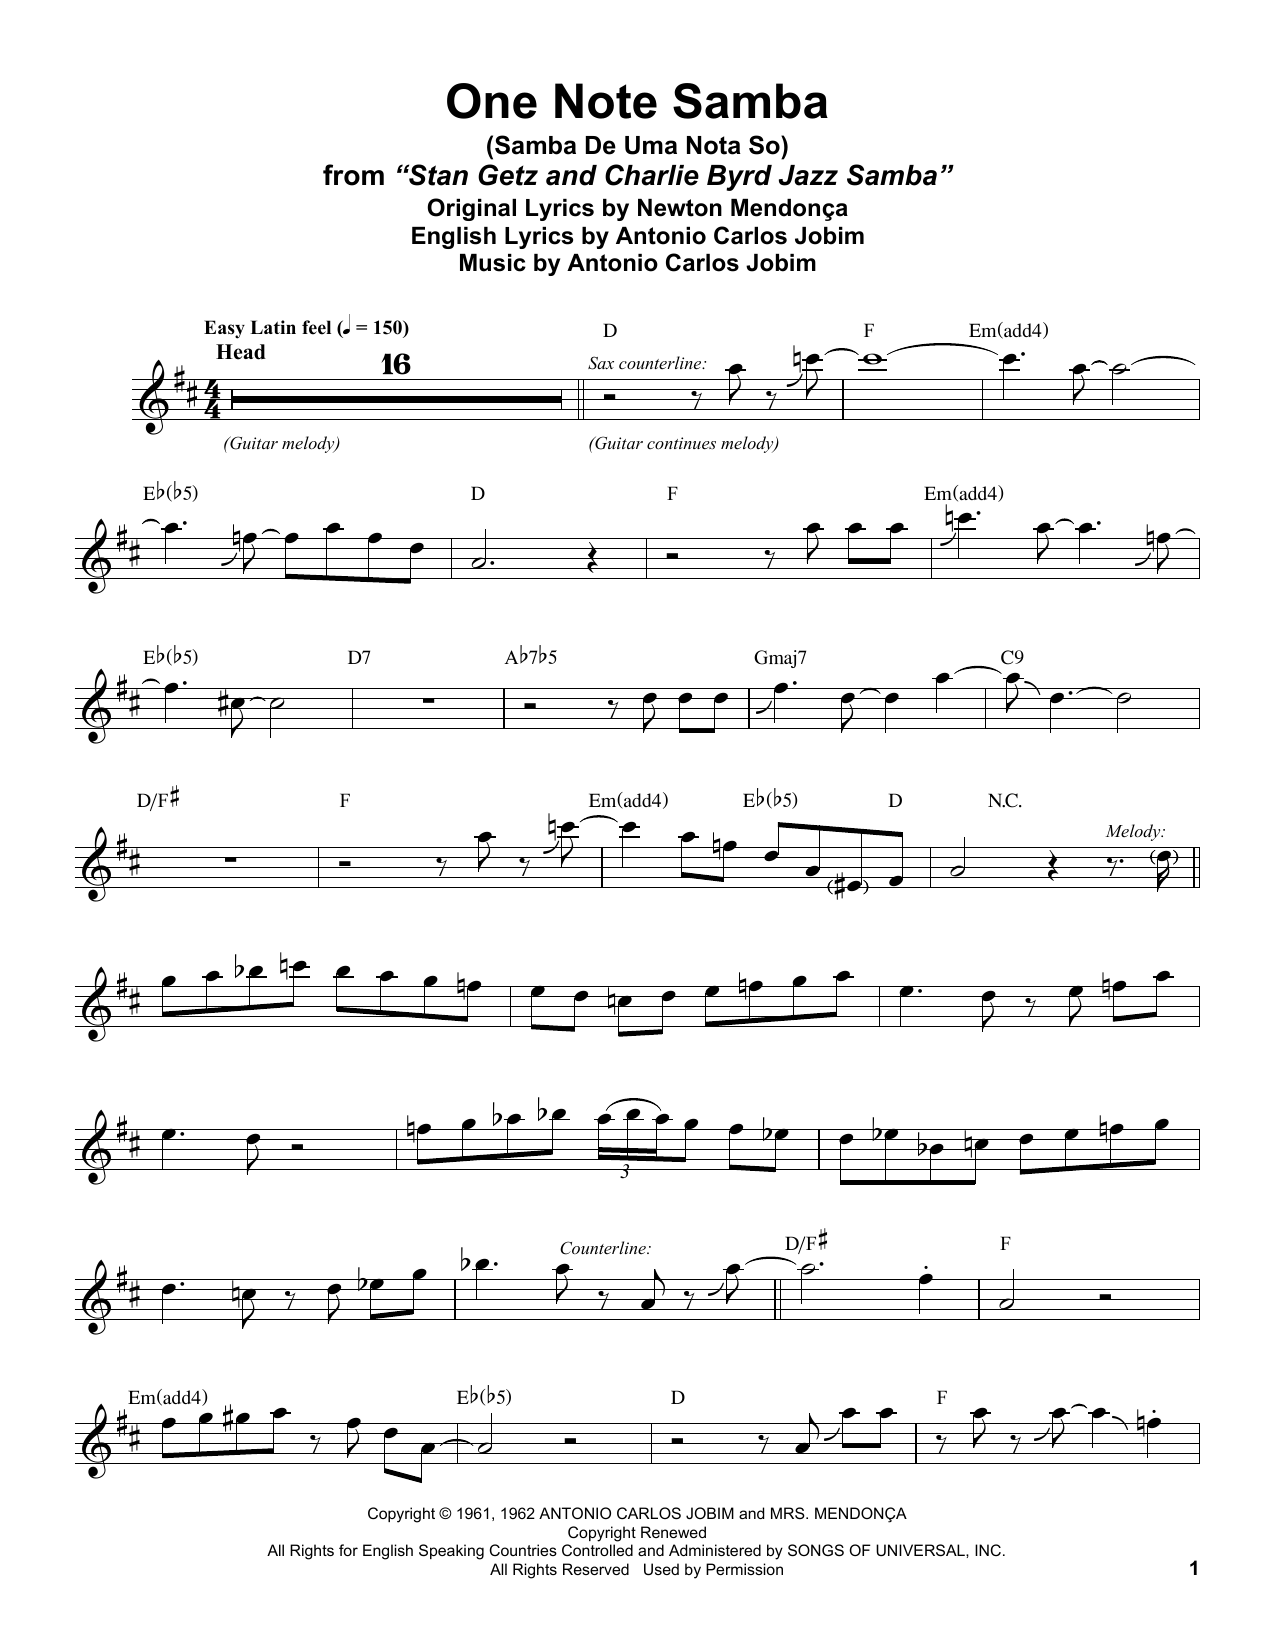 Stan Getz One Note Samba (Samba De Uma Nota So) Sheet Music Notes & Chords for Alto Sax Transcription - Download or Print PDF